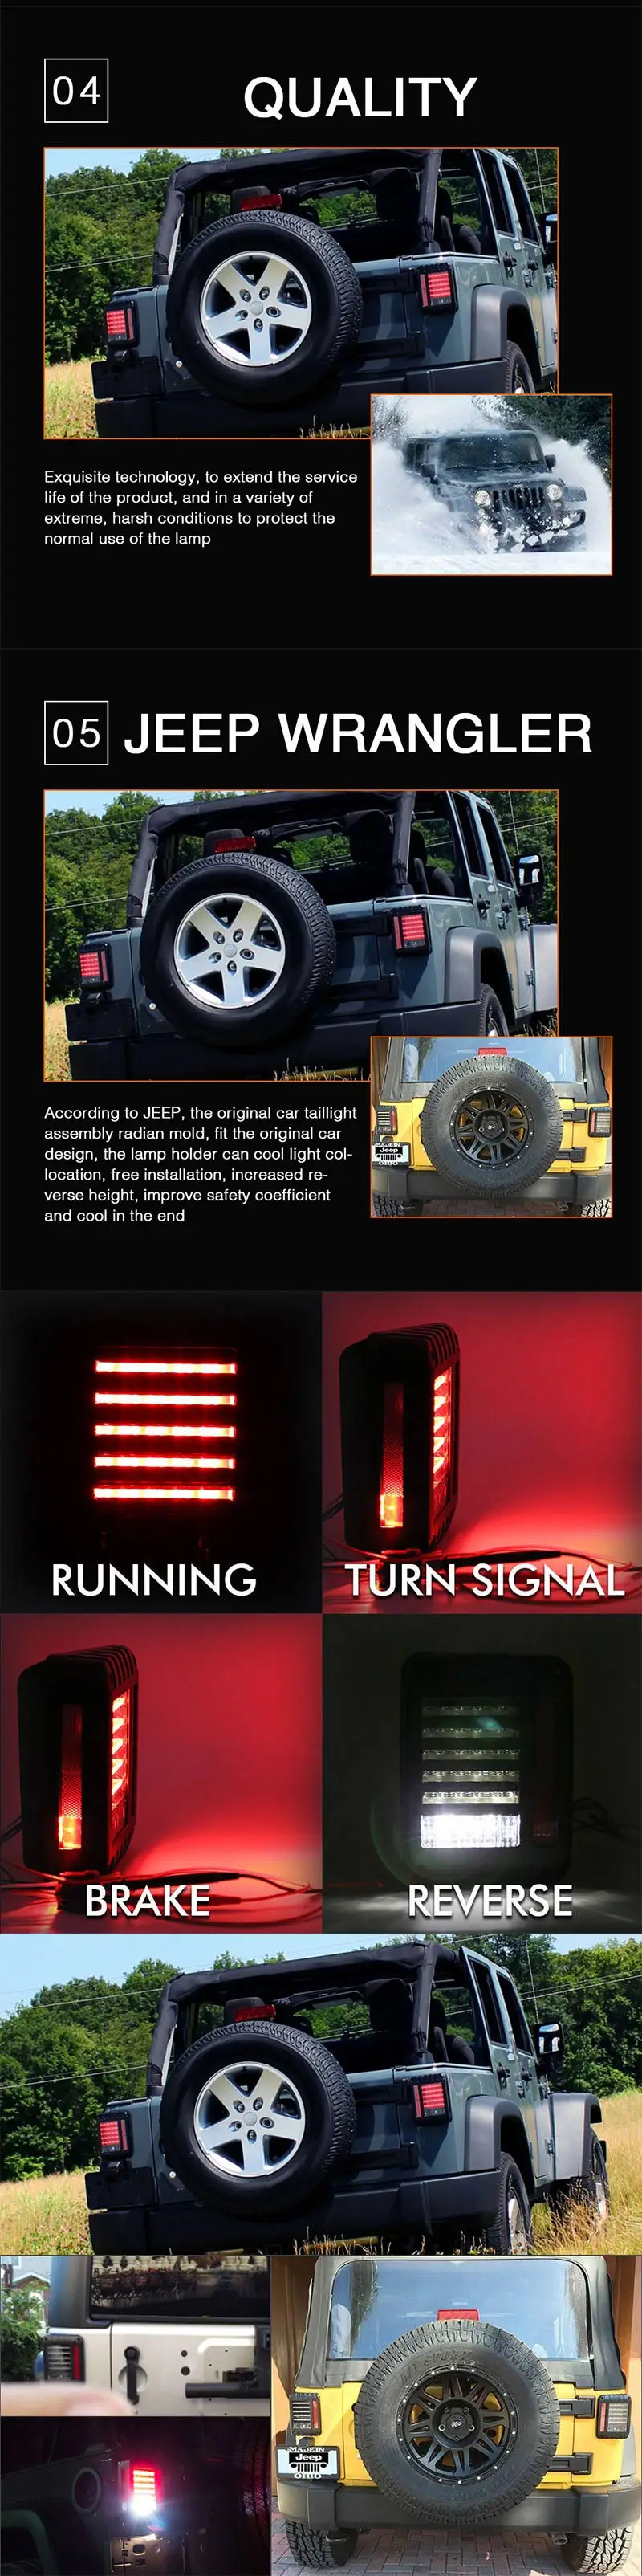 CO светильник евро/США Версия задние фонари 20 Вт светодиодный сигнальный задний фонарь стоп-сигнал обратный резервный стояночный стоп для 07-15 Jeep Wrangler TJ 12V